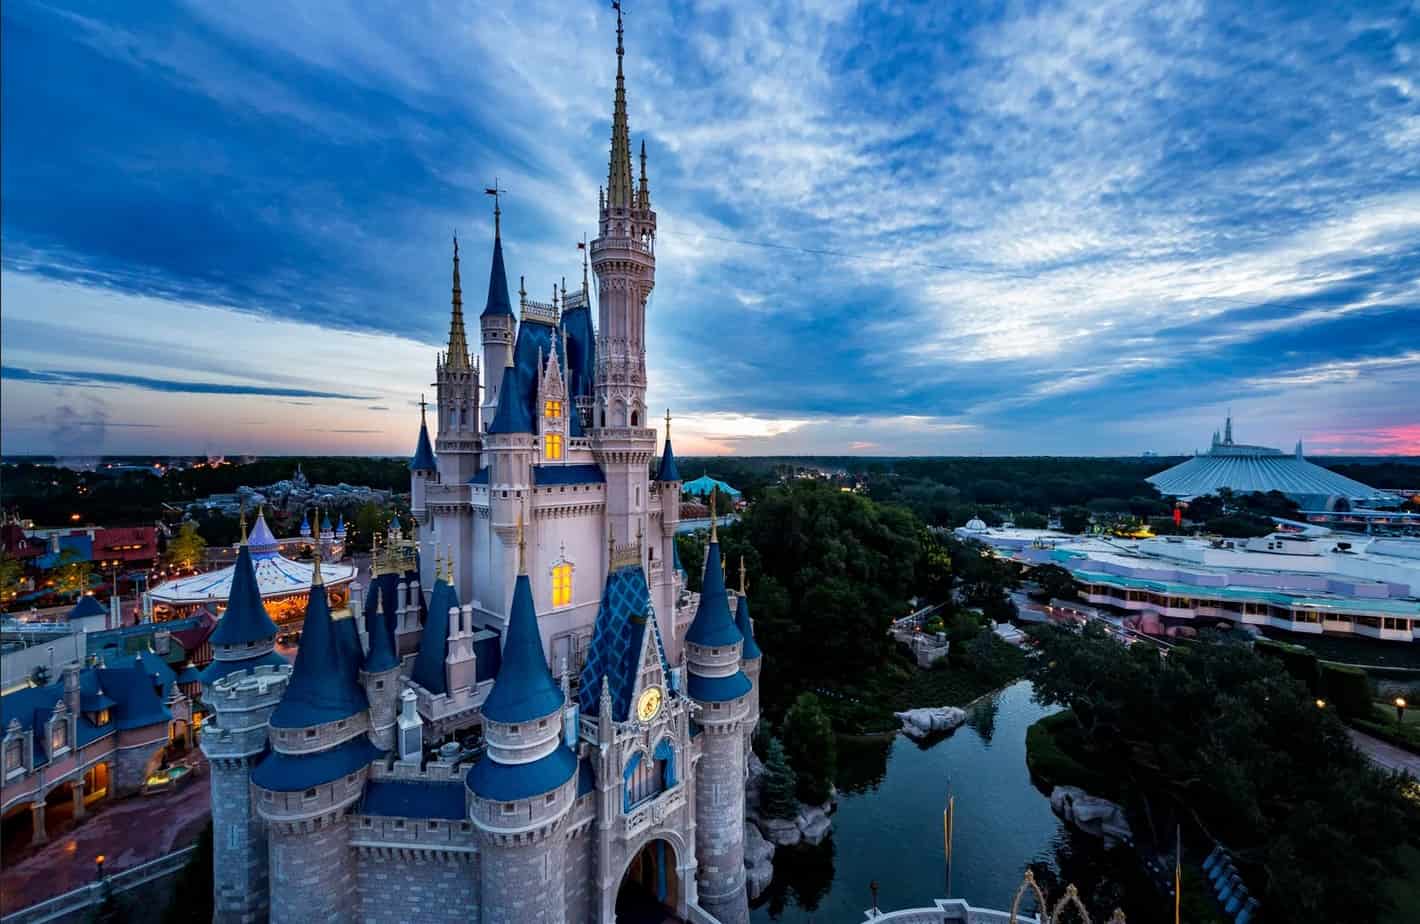 Disney ofrece puestos de empleo a casi 17 dólares la hora – El Profe Show